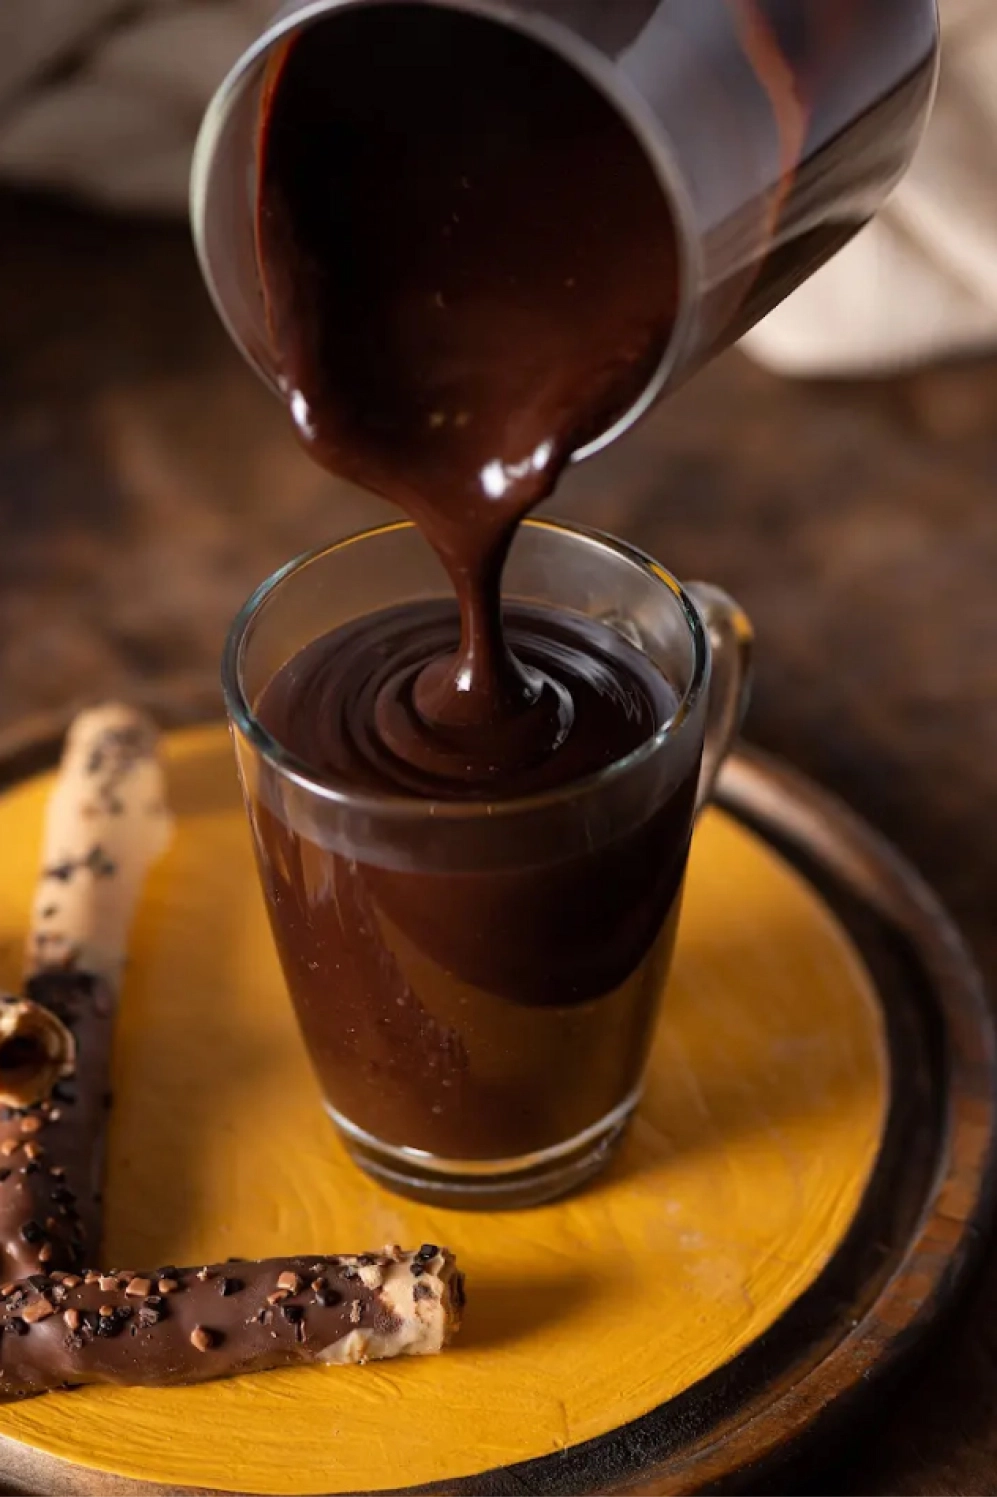 Chocolate sendo derramado em uma xicara